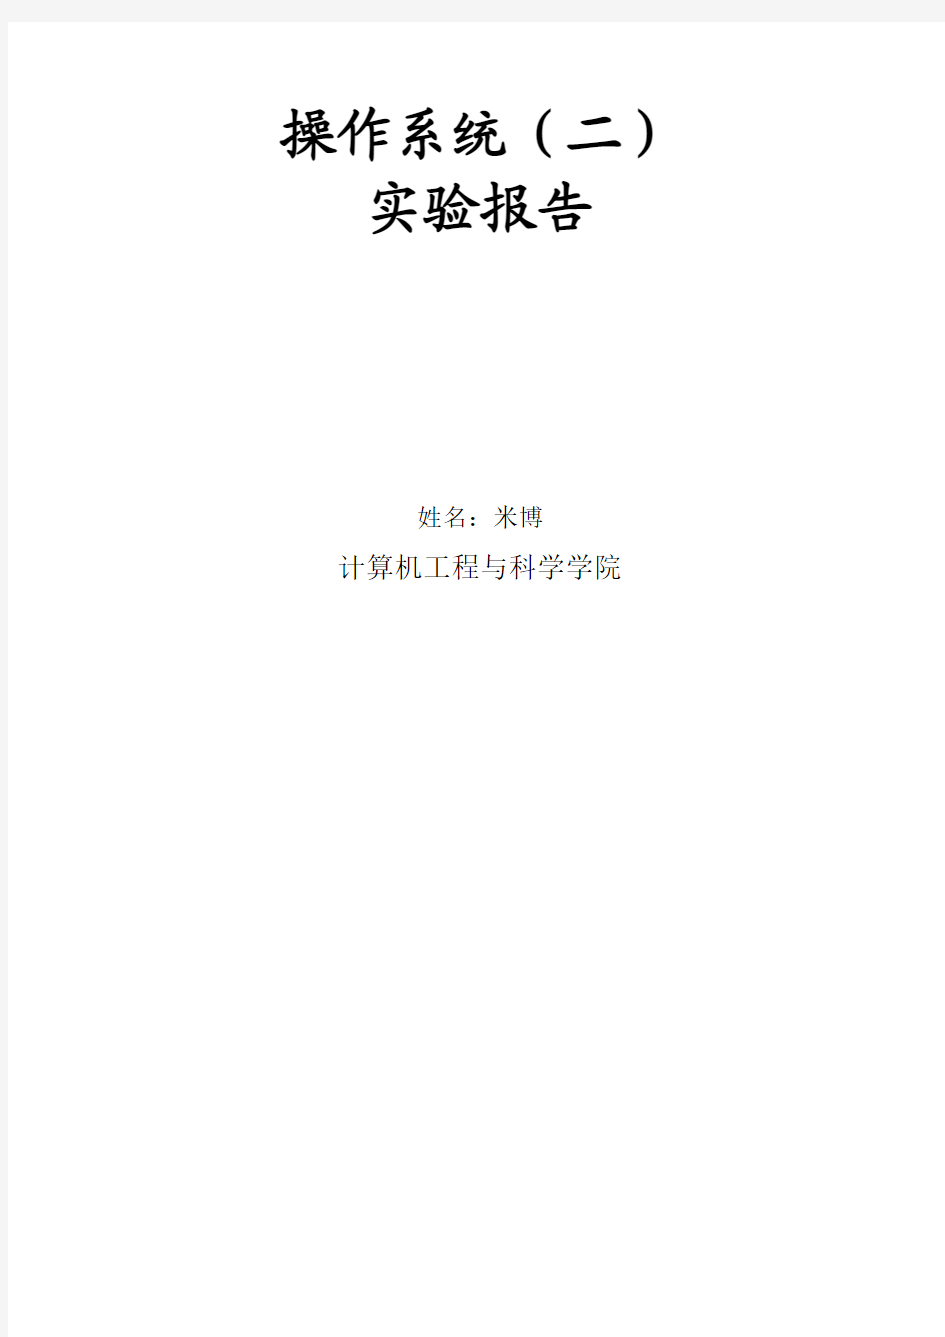 操作系统(二)实验报告_上海大学计算机与科学系